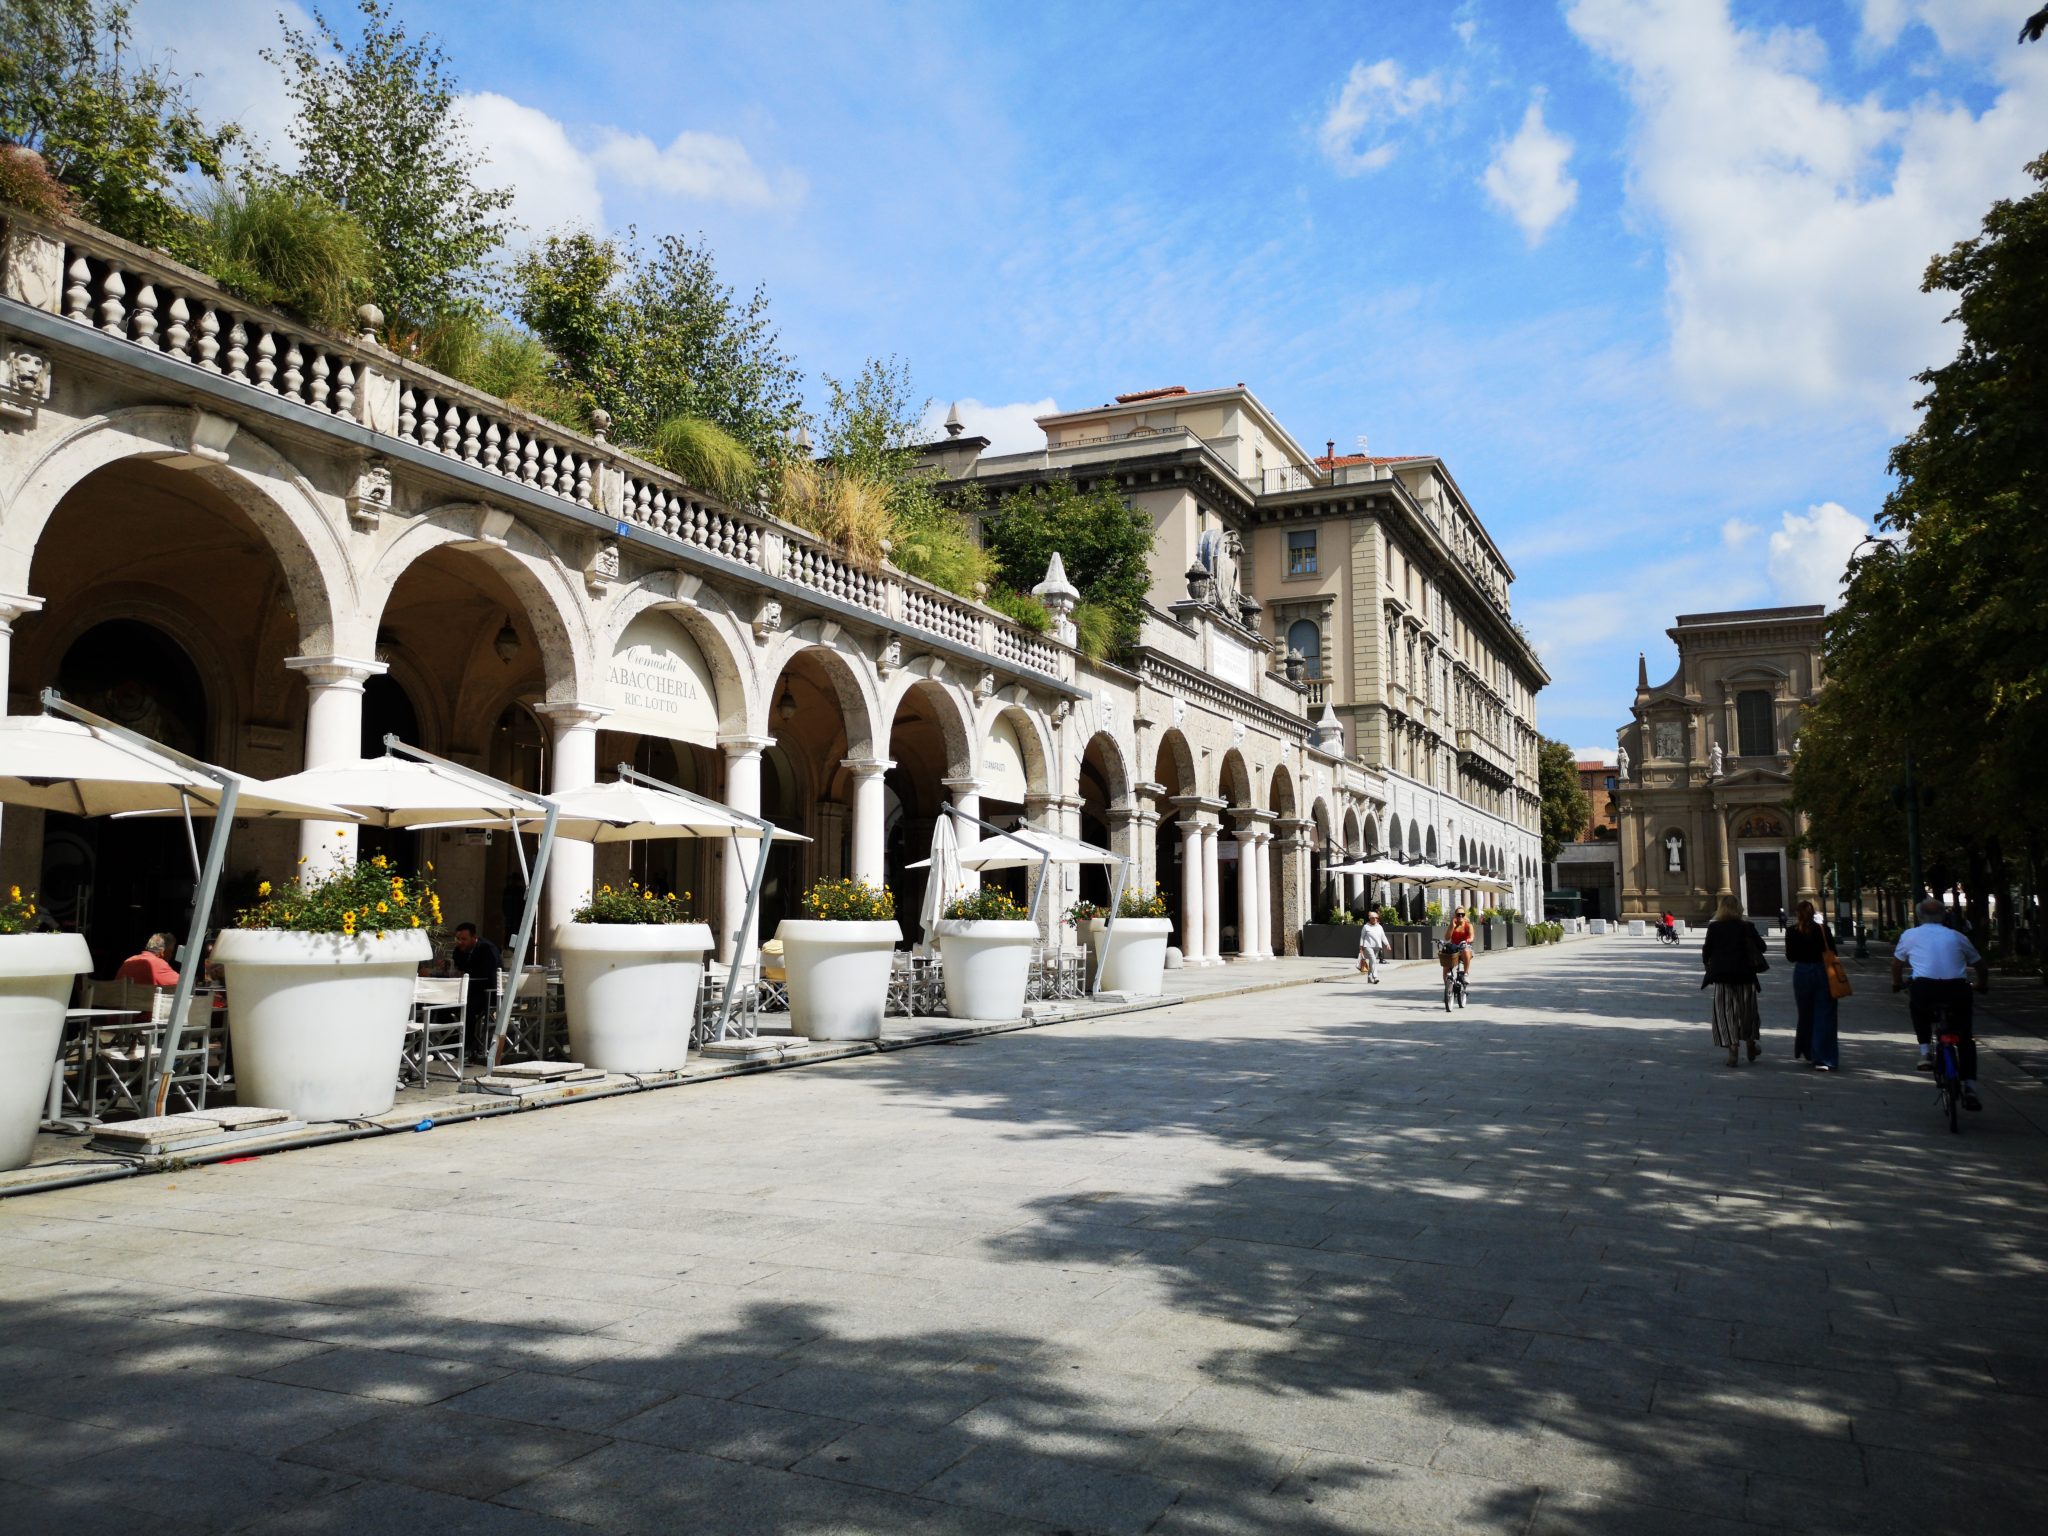 Budynek arkadowy w miasteczku Bergamo we Włoszech w słoneczny dzień, na zewnątrz stoliki kawiarni i restauracji